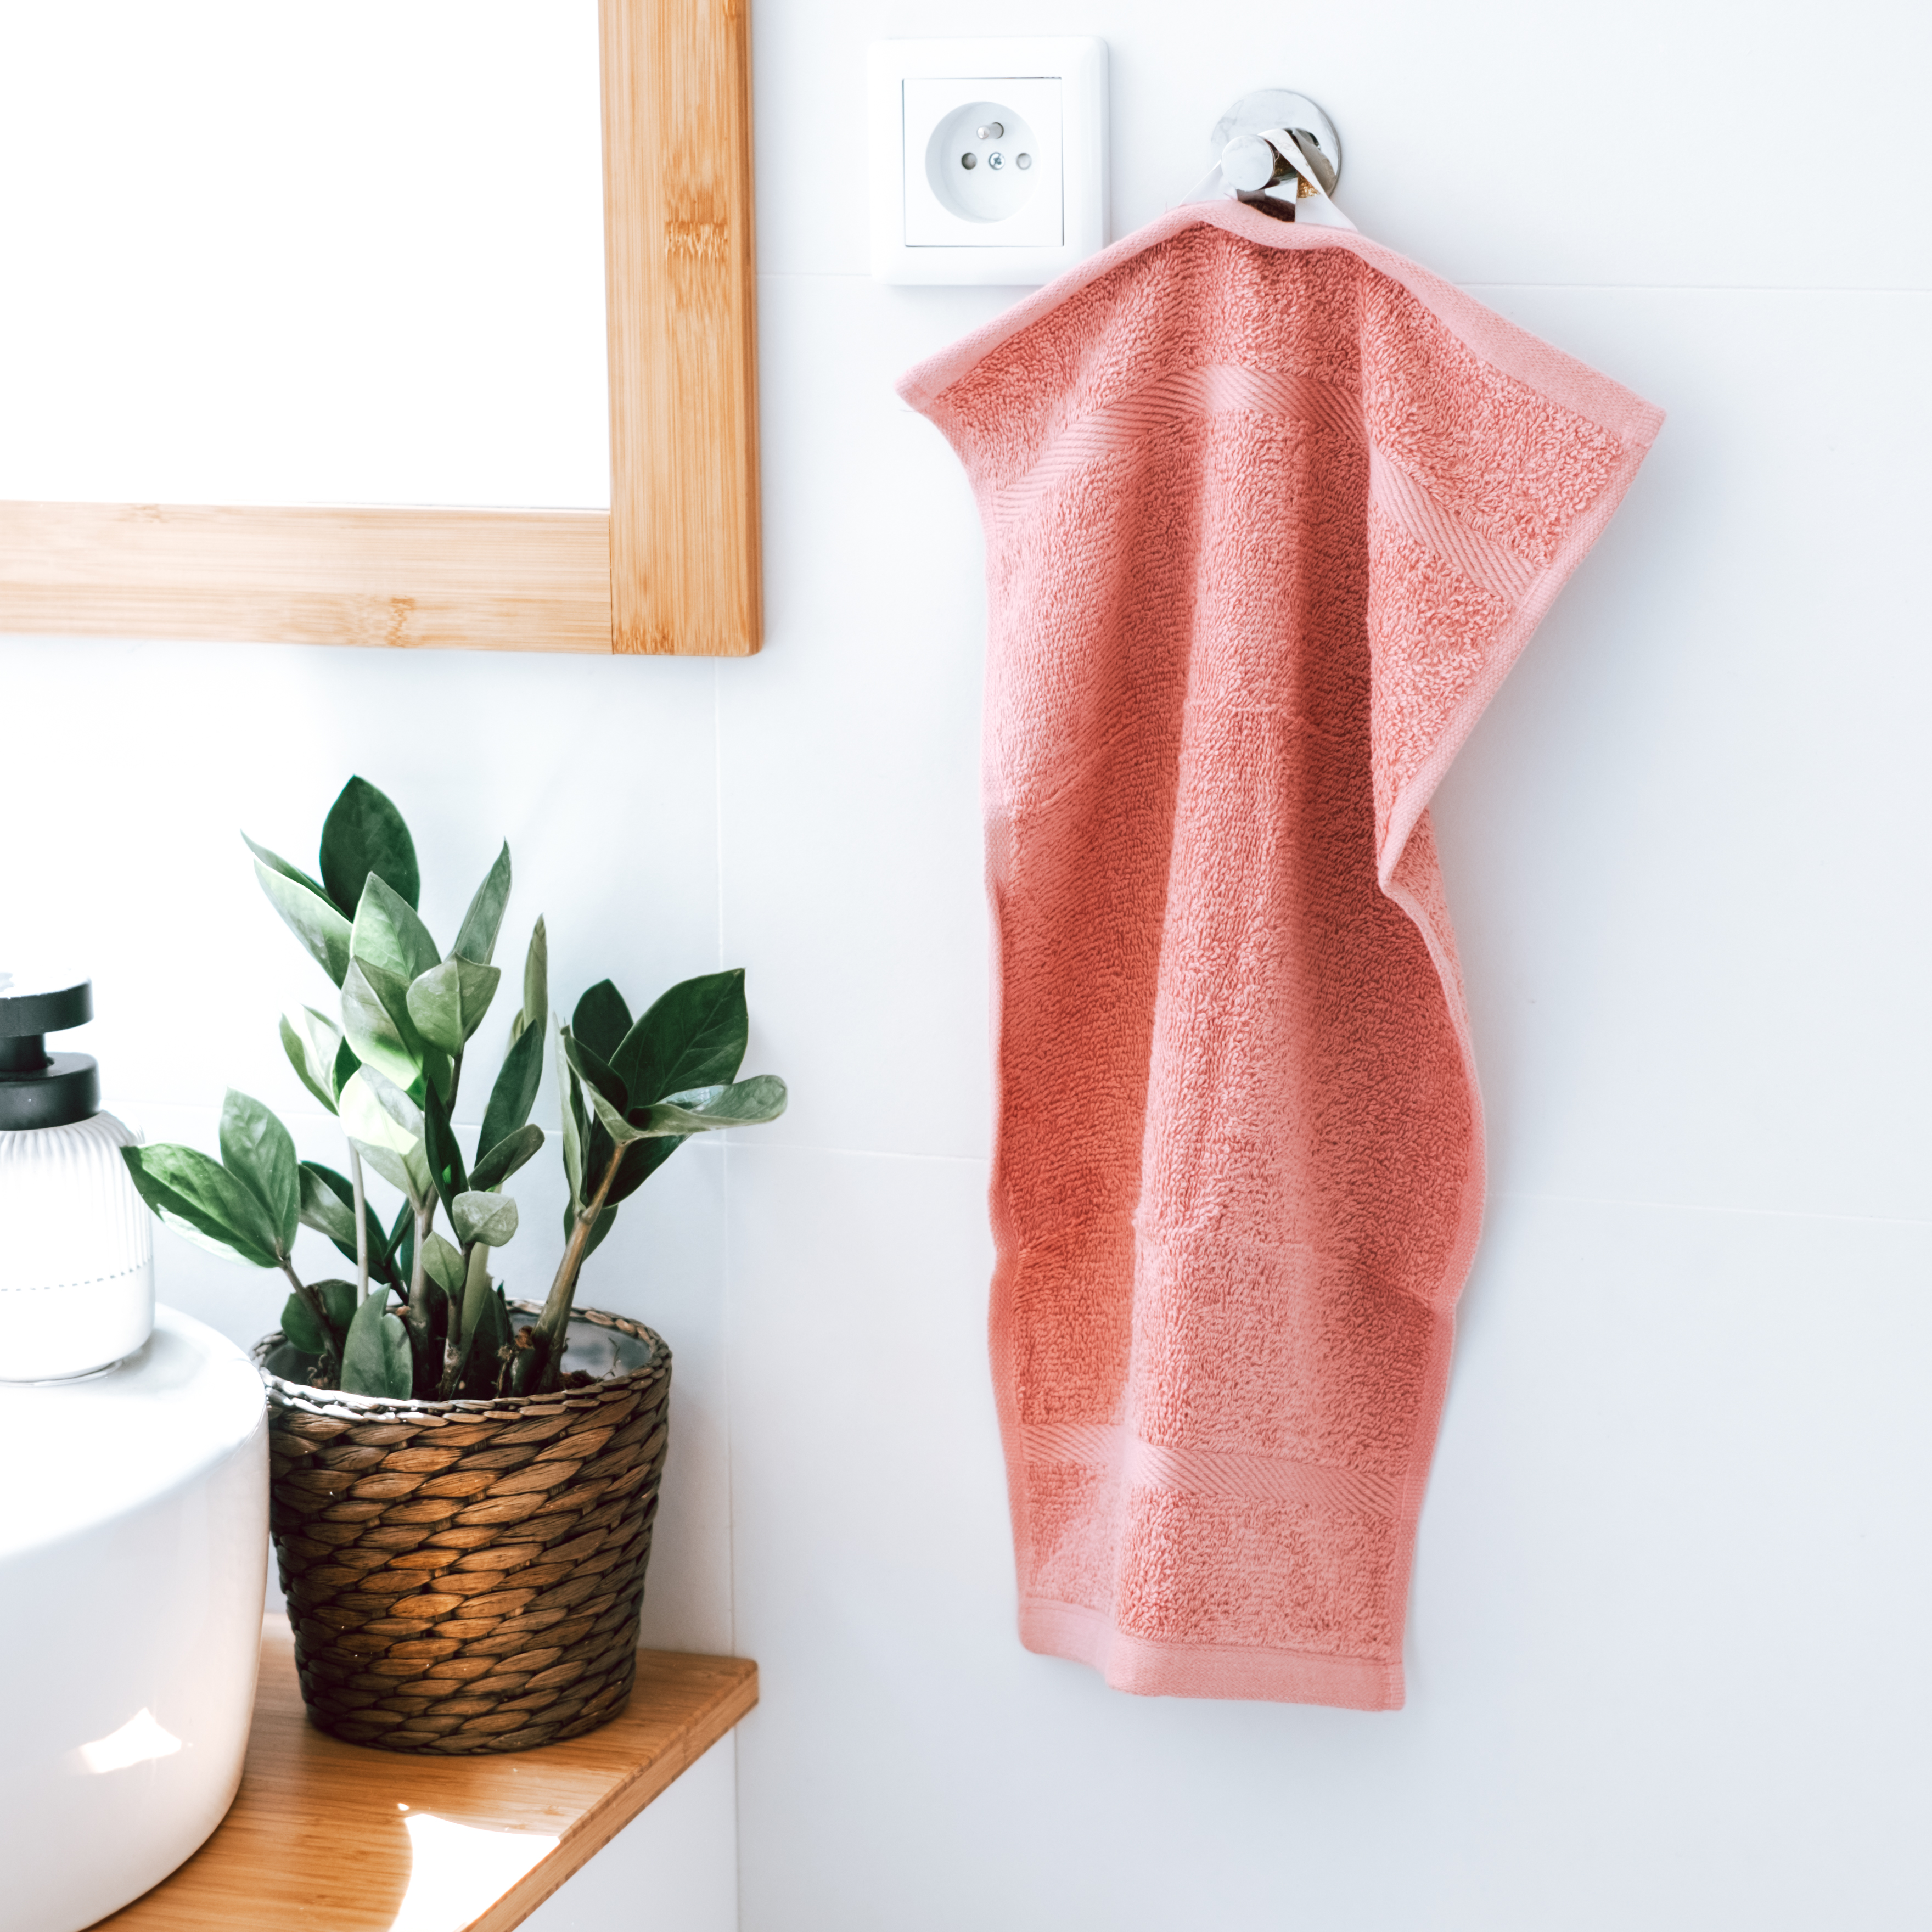 Jak se starat o ručníky?